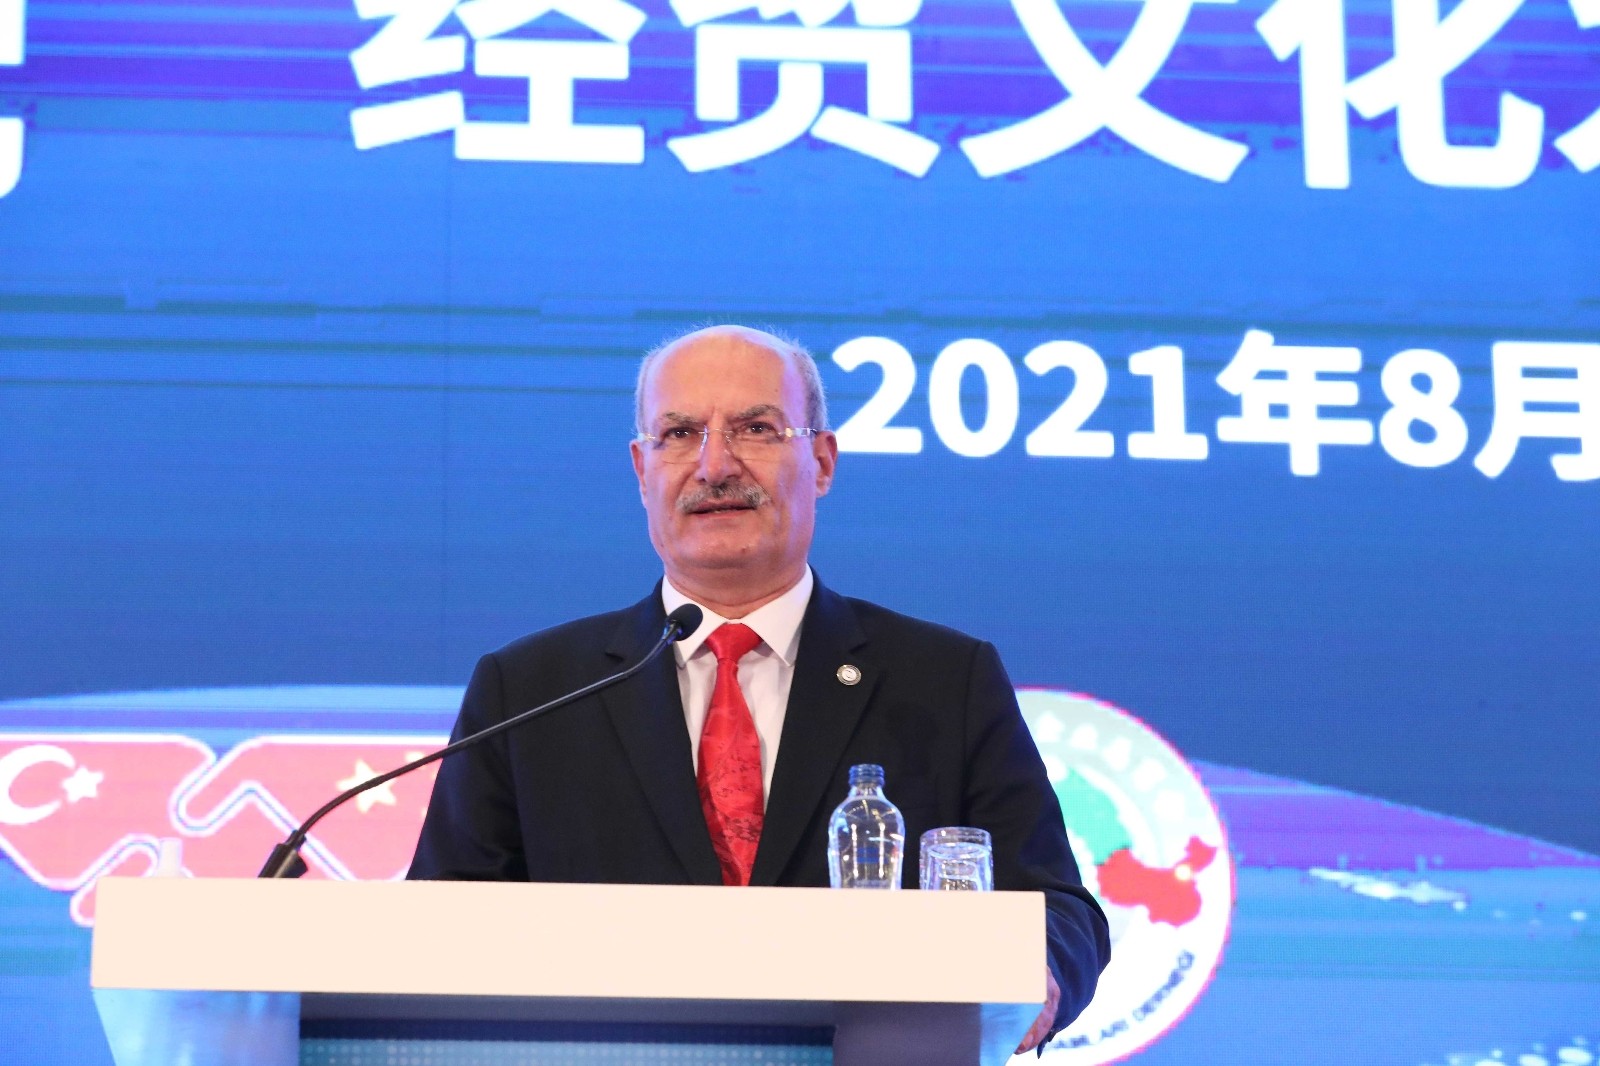 ATO Başkanı Baran: "Türkiye, Çinli global şirketler için ideal bir bölgesel merkez olma potansiyeline sahip”